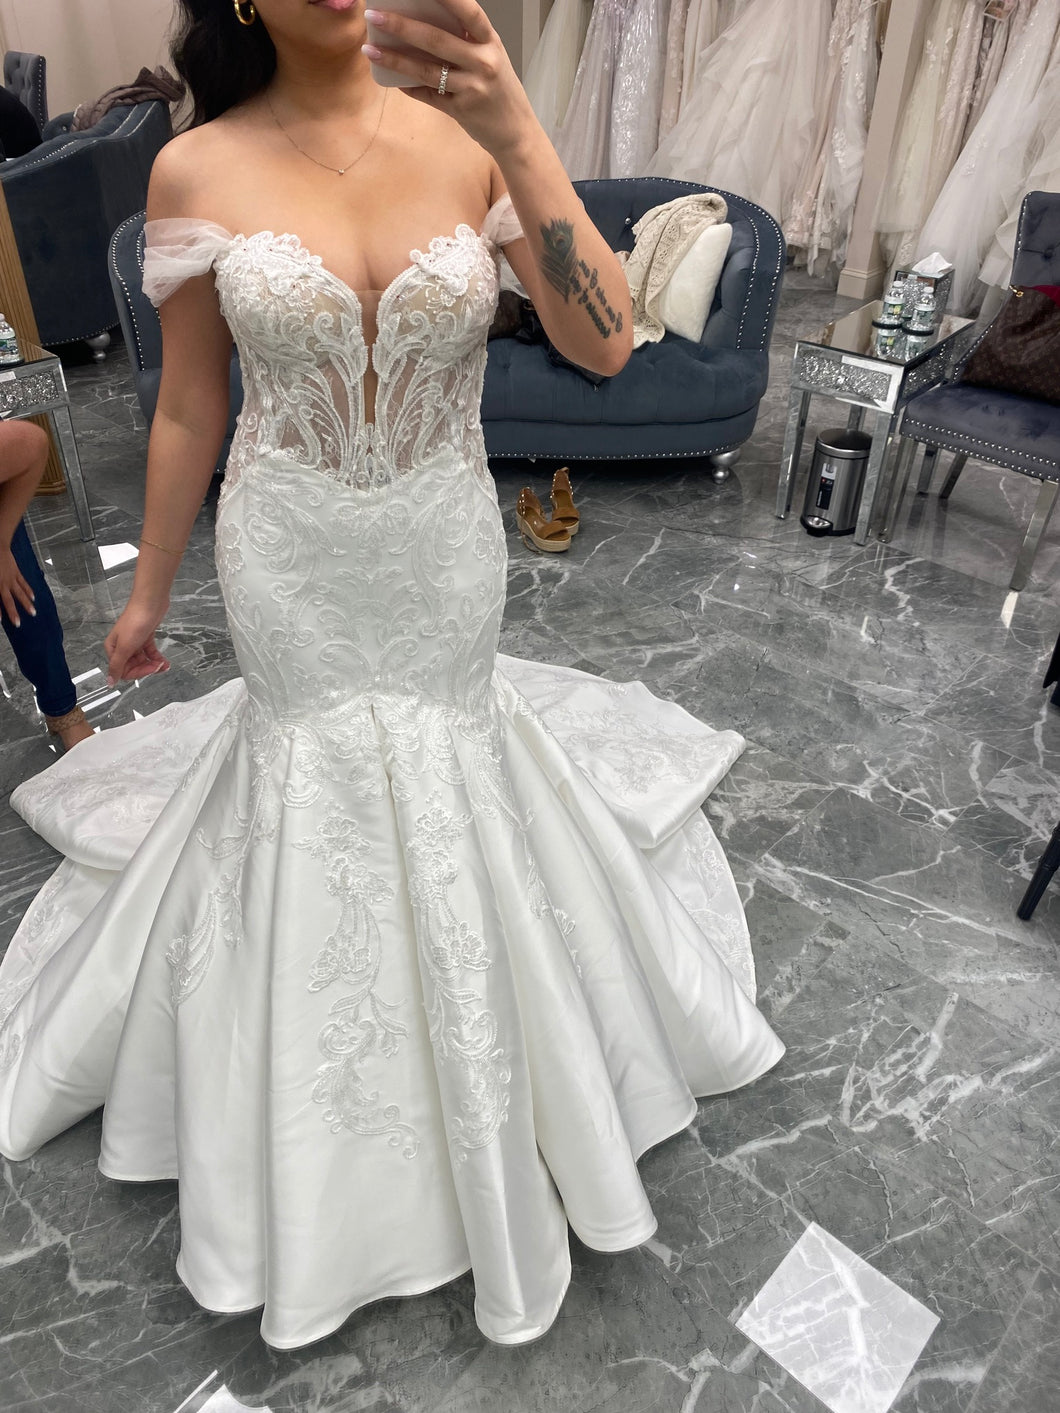 Élysée Bridal 'SATINE' wedding dress size-04 NEW